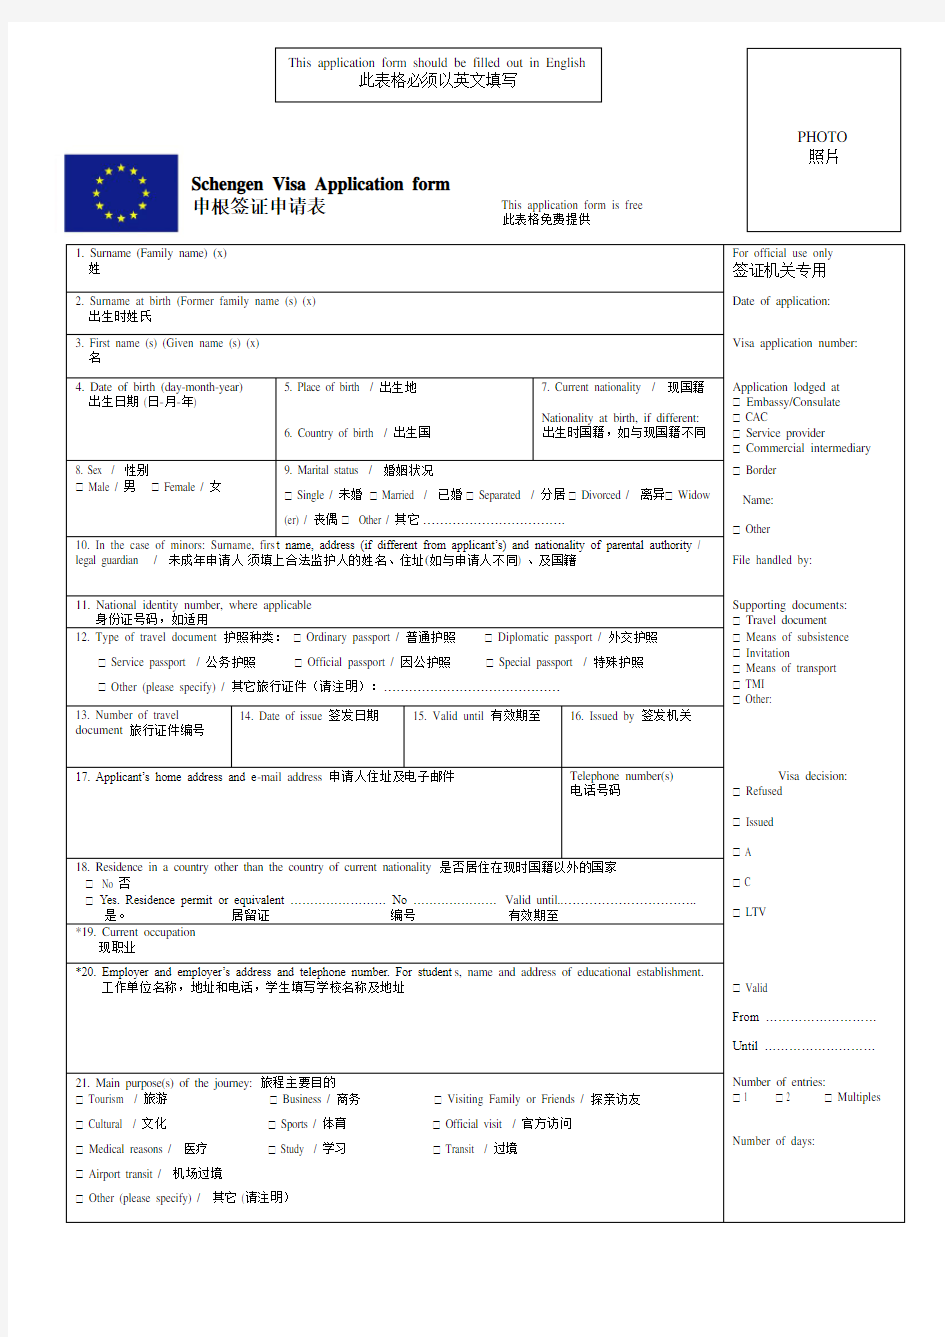 (中英对照) 申根签证申请表